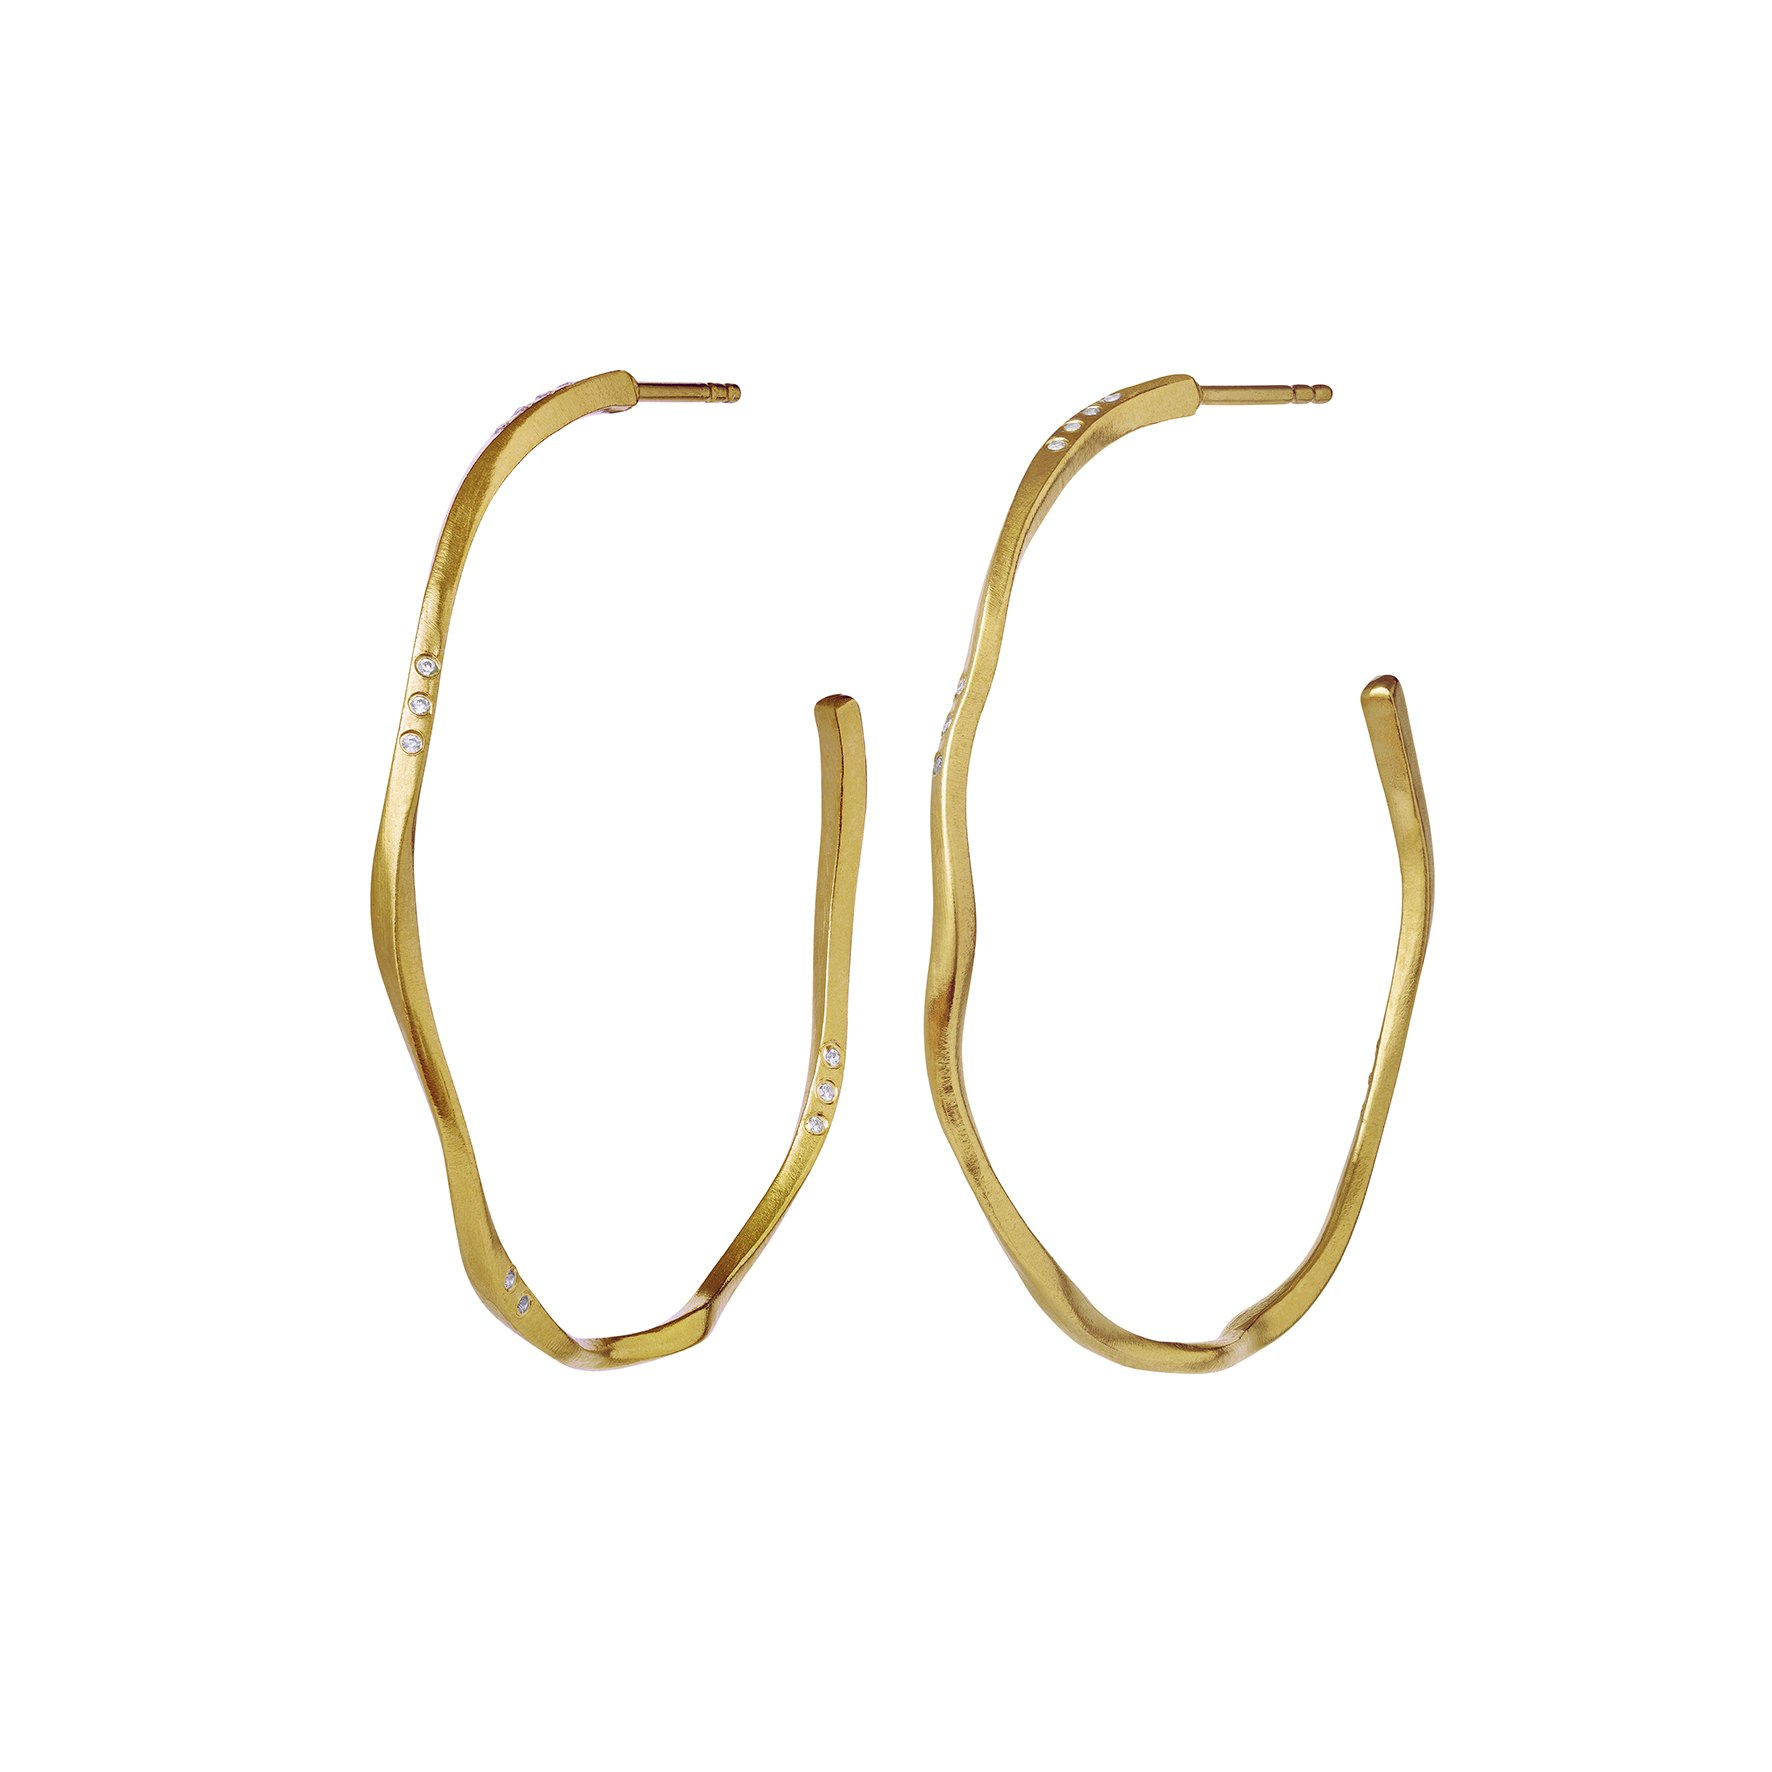 Echo Grande Earrings from Maanesten in Goldplated Silver Sterling 925